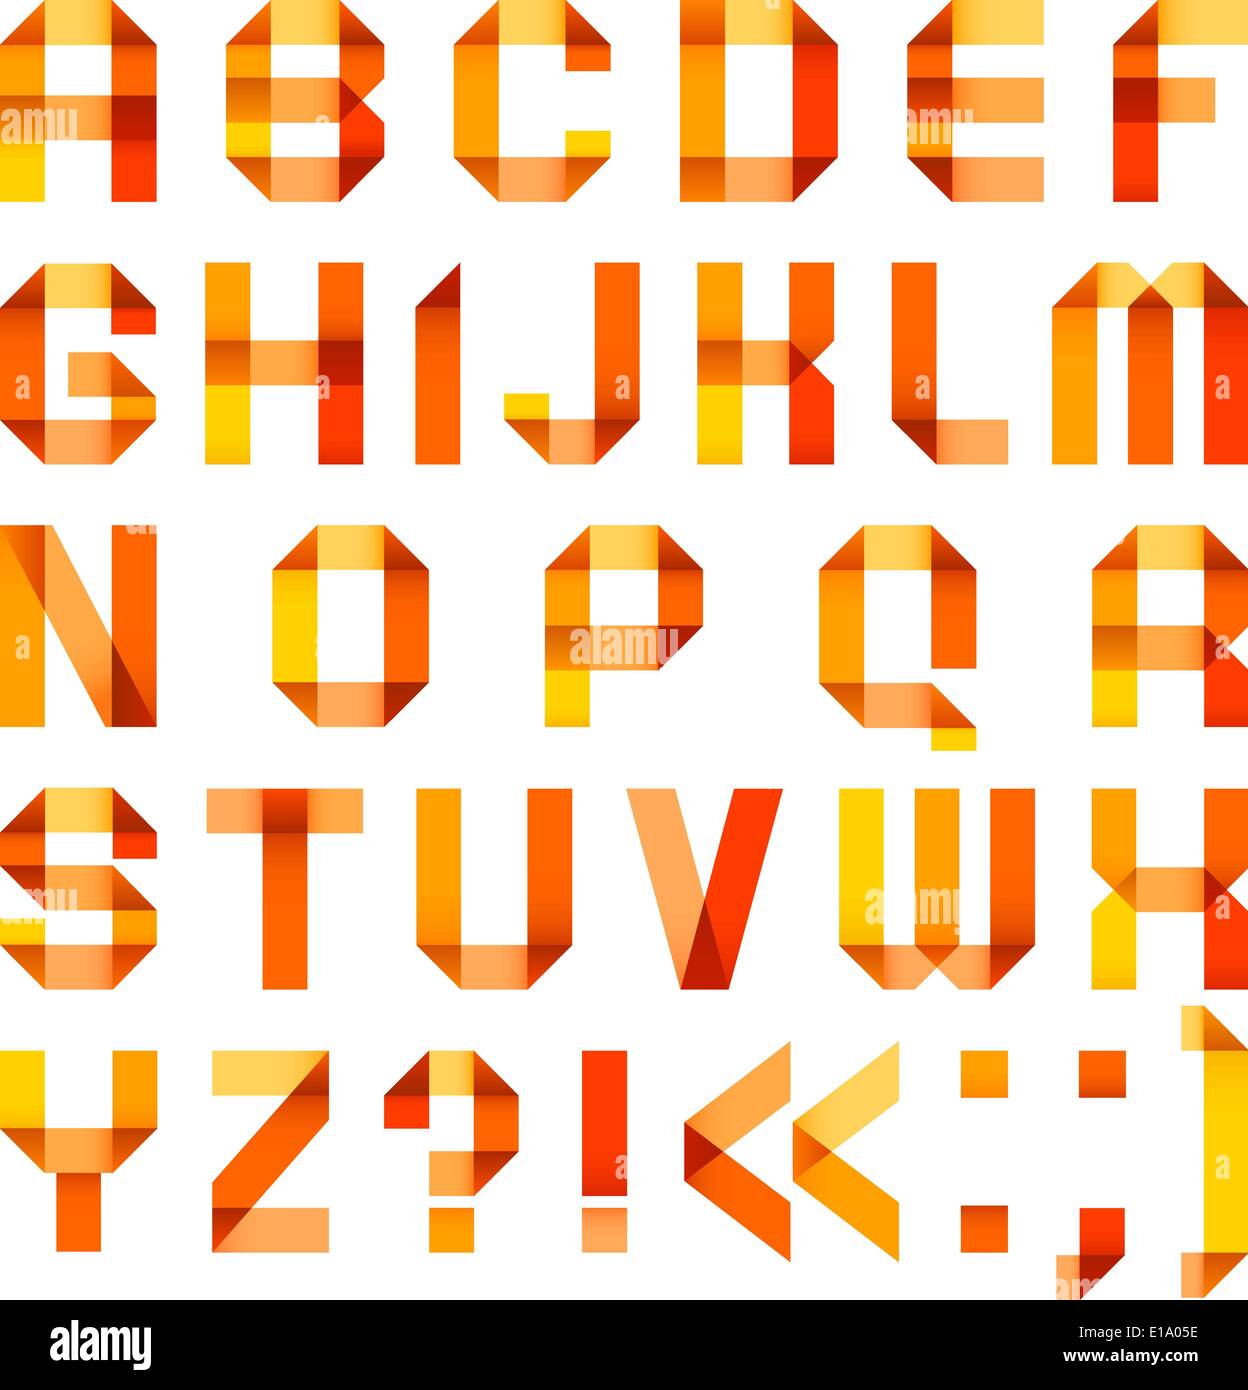 Lettere spettrale ripiegati del nastro di carta-arancio - alfabeto romano (A,B,C,D, E, F, G, H, I, J, K, L, M, N, O, P, Q, R, S, T, U, Illustrazione Vettoriale